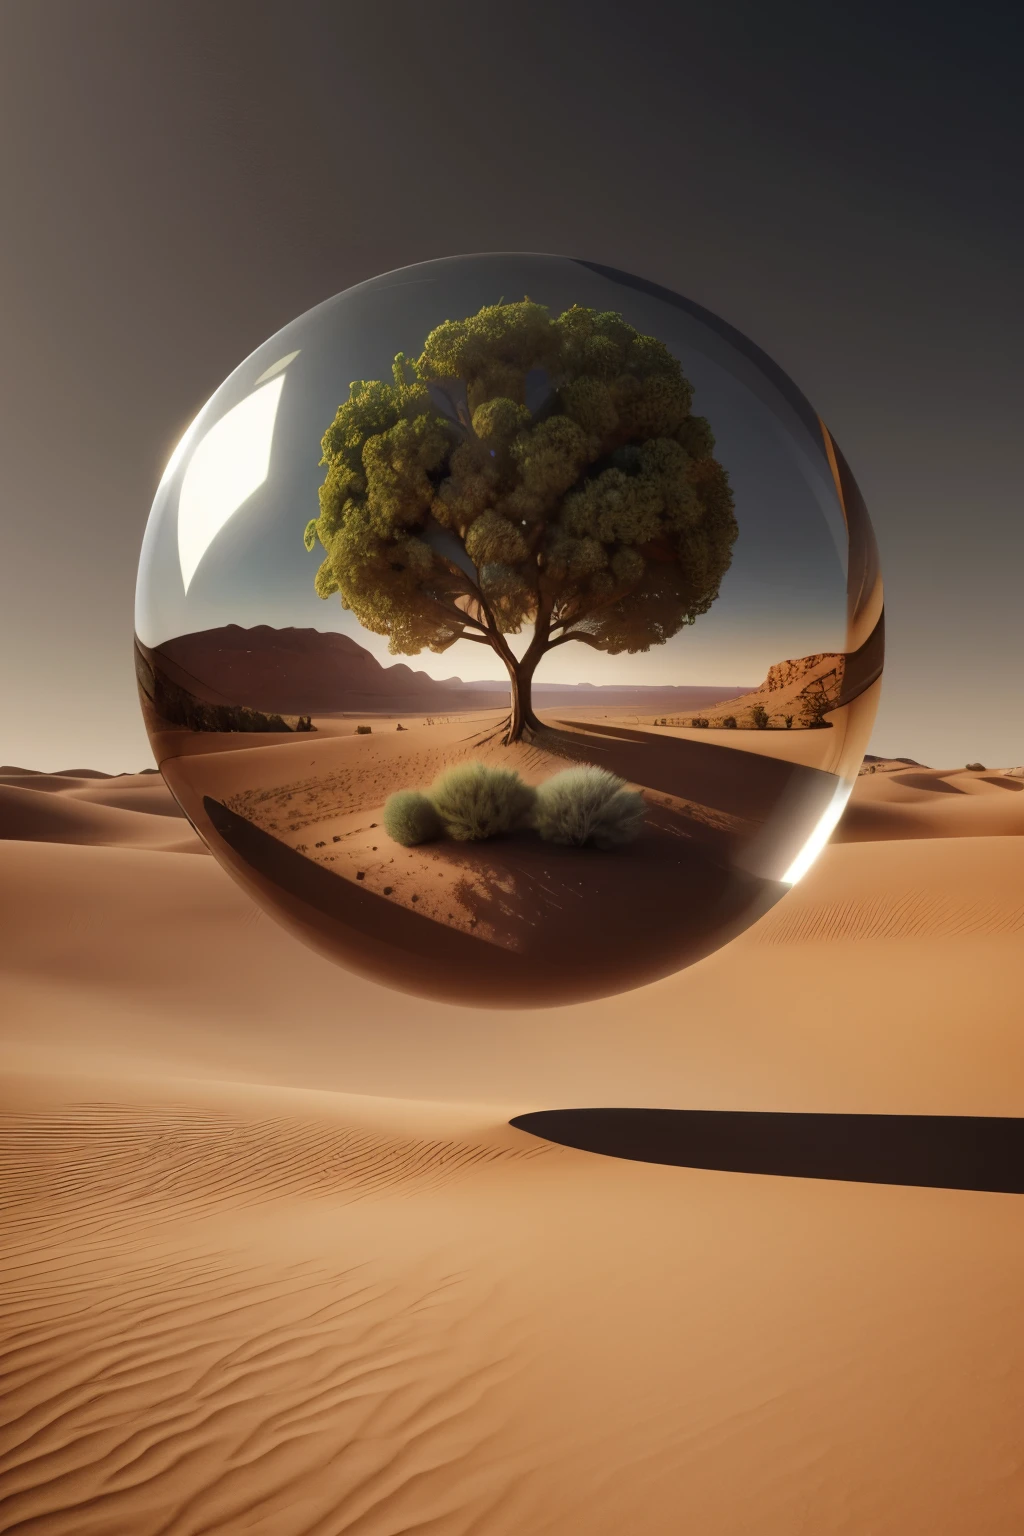 砂漠の風景に映るガラス玉の中の木のアラビア数字画像, ボールの中の生命の木, シュールなデジタルアート, シュルレアリスム 8k, シュールなデジタルアート, シュールアート, シュールな 3D レンダリング, 3Dレンダリングデジタルアート, マーク・アダムス, シュールなコンセプトアート, 3Dレンダリングビープル, 様式化されたデジタルアート, 4k シュルレアリスム